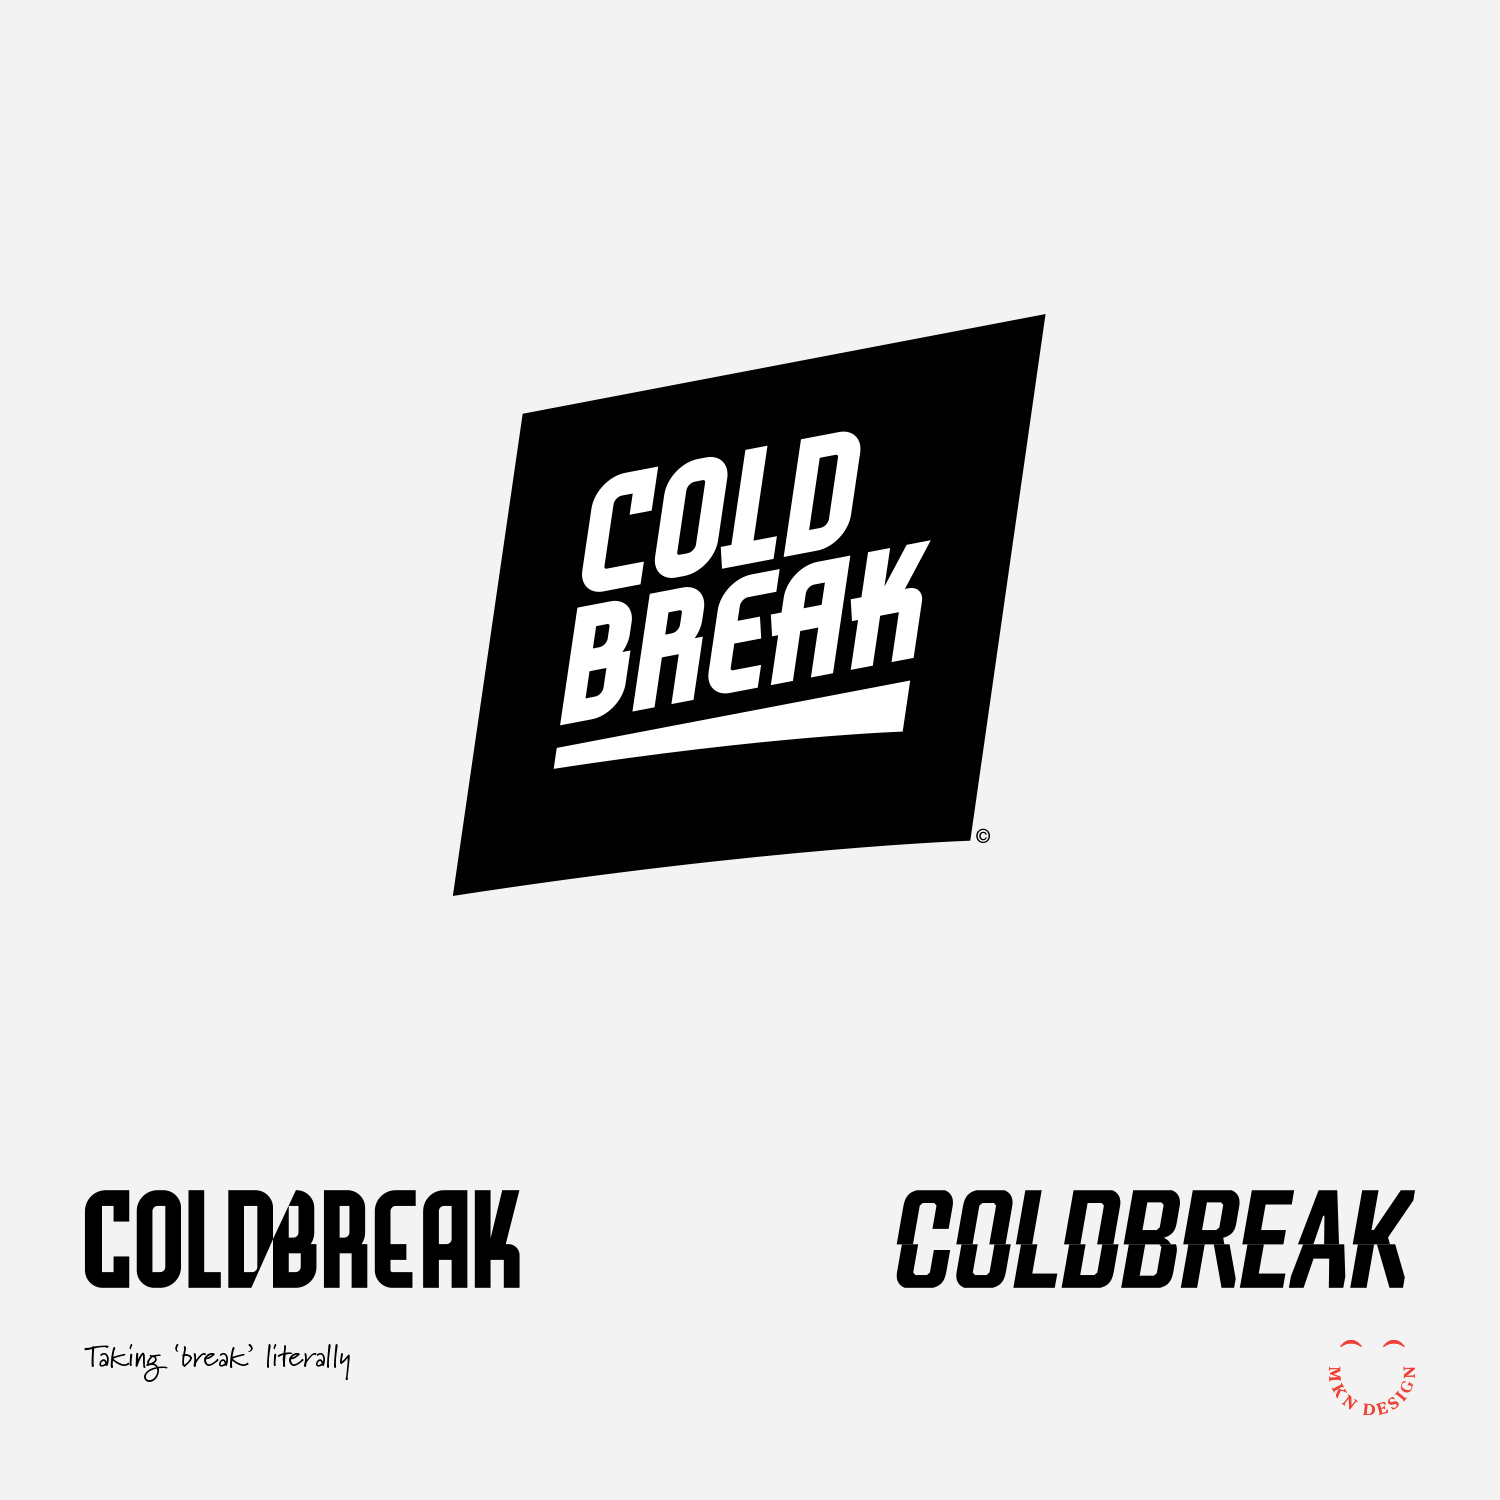 Coldbreak_Mark_Exploration_SEC_3.png